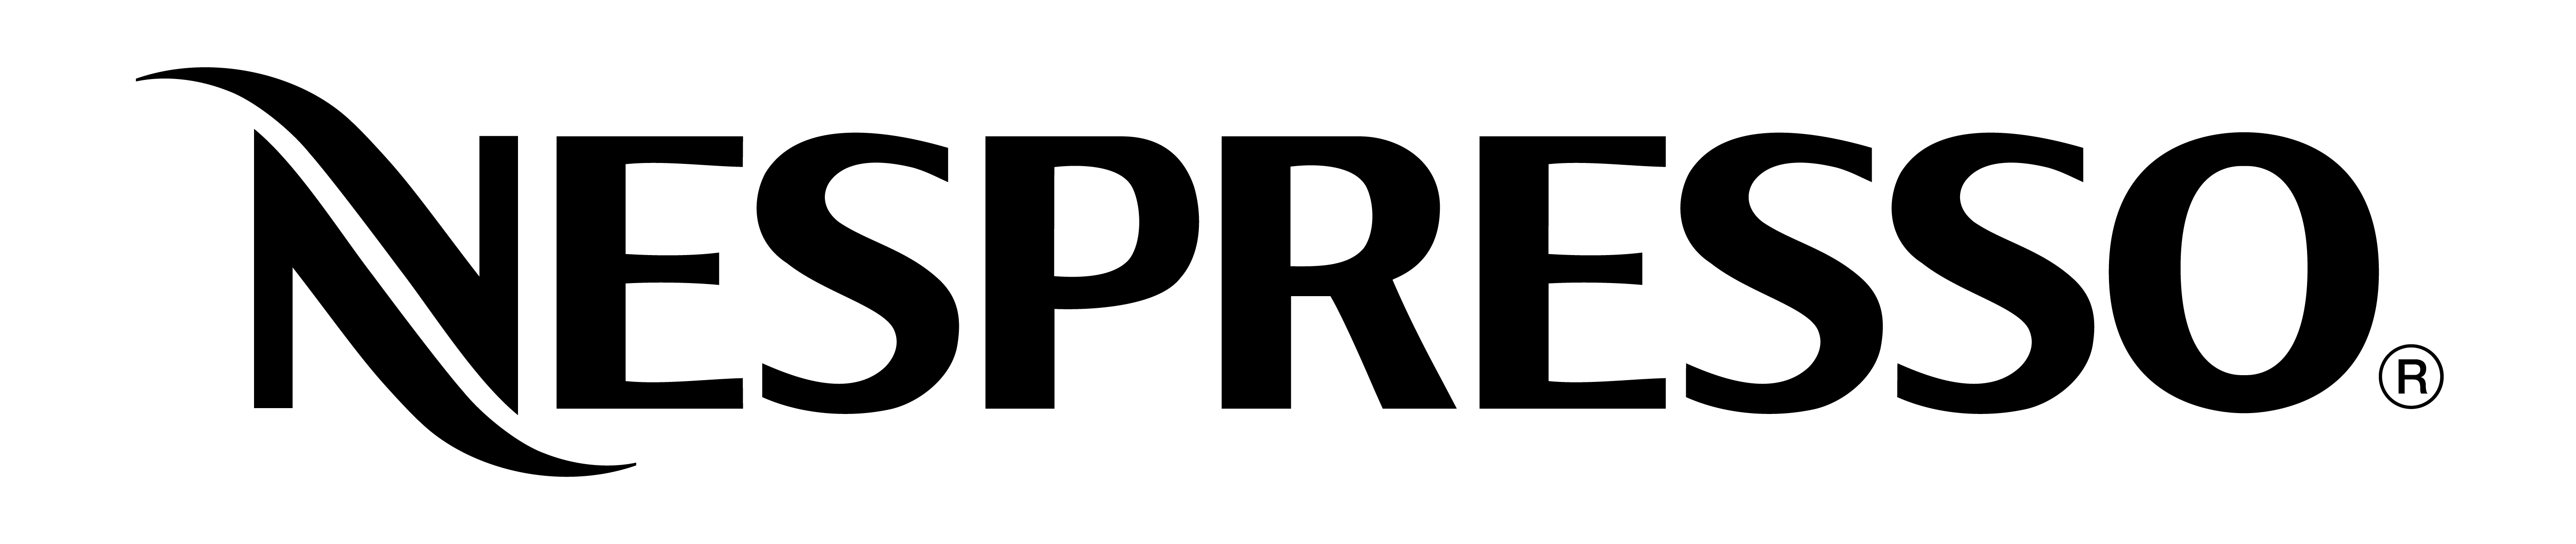 ネスプレッソ ポップアップ ブティック 六本木ヒルズ 2016年10月1日 土 より 期間限定オープン ネスレネスプレッソ株式会社のプレスリリース